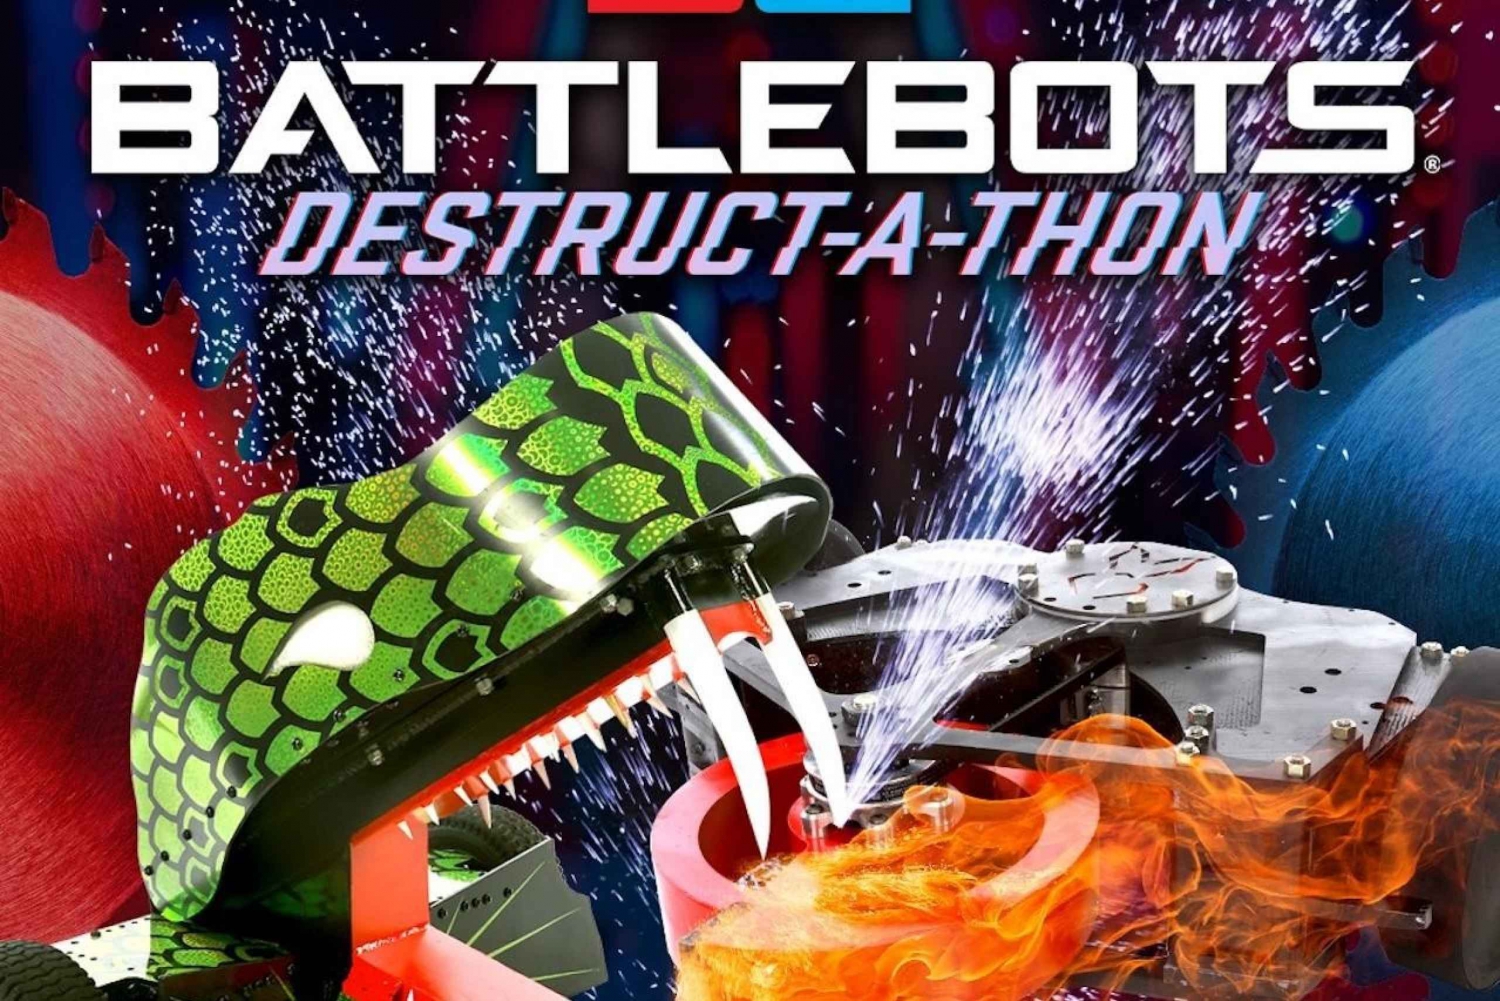 Las Vegas: BattleBots Destruct-A-Thon Show